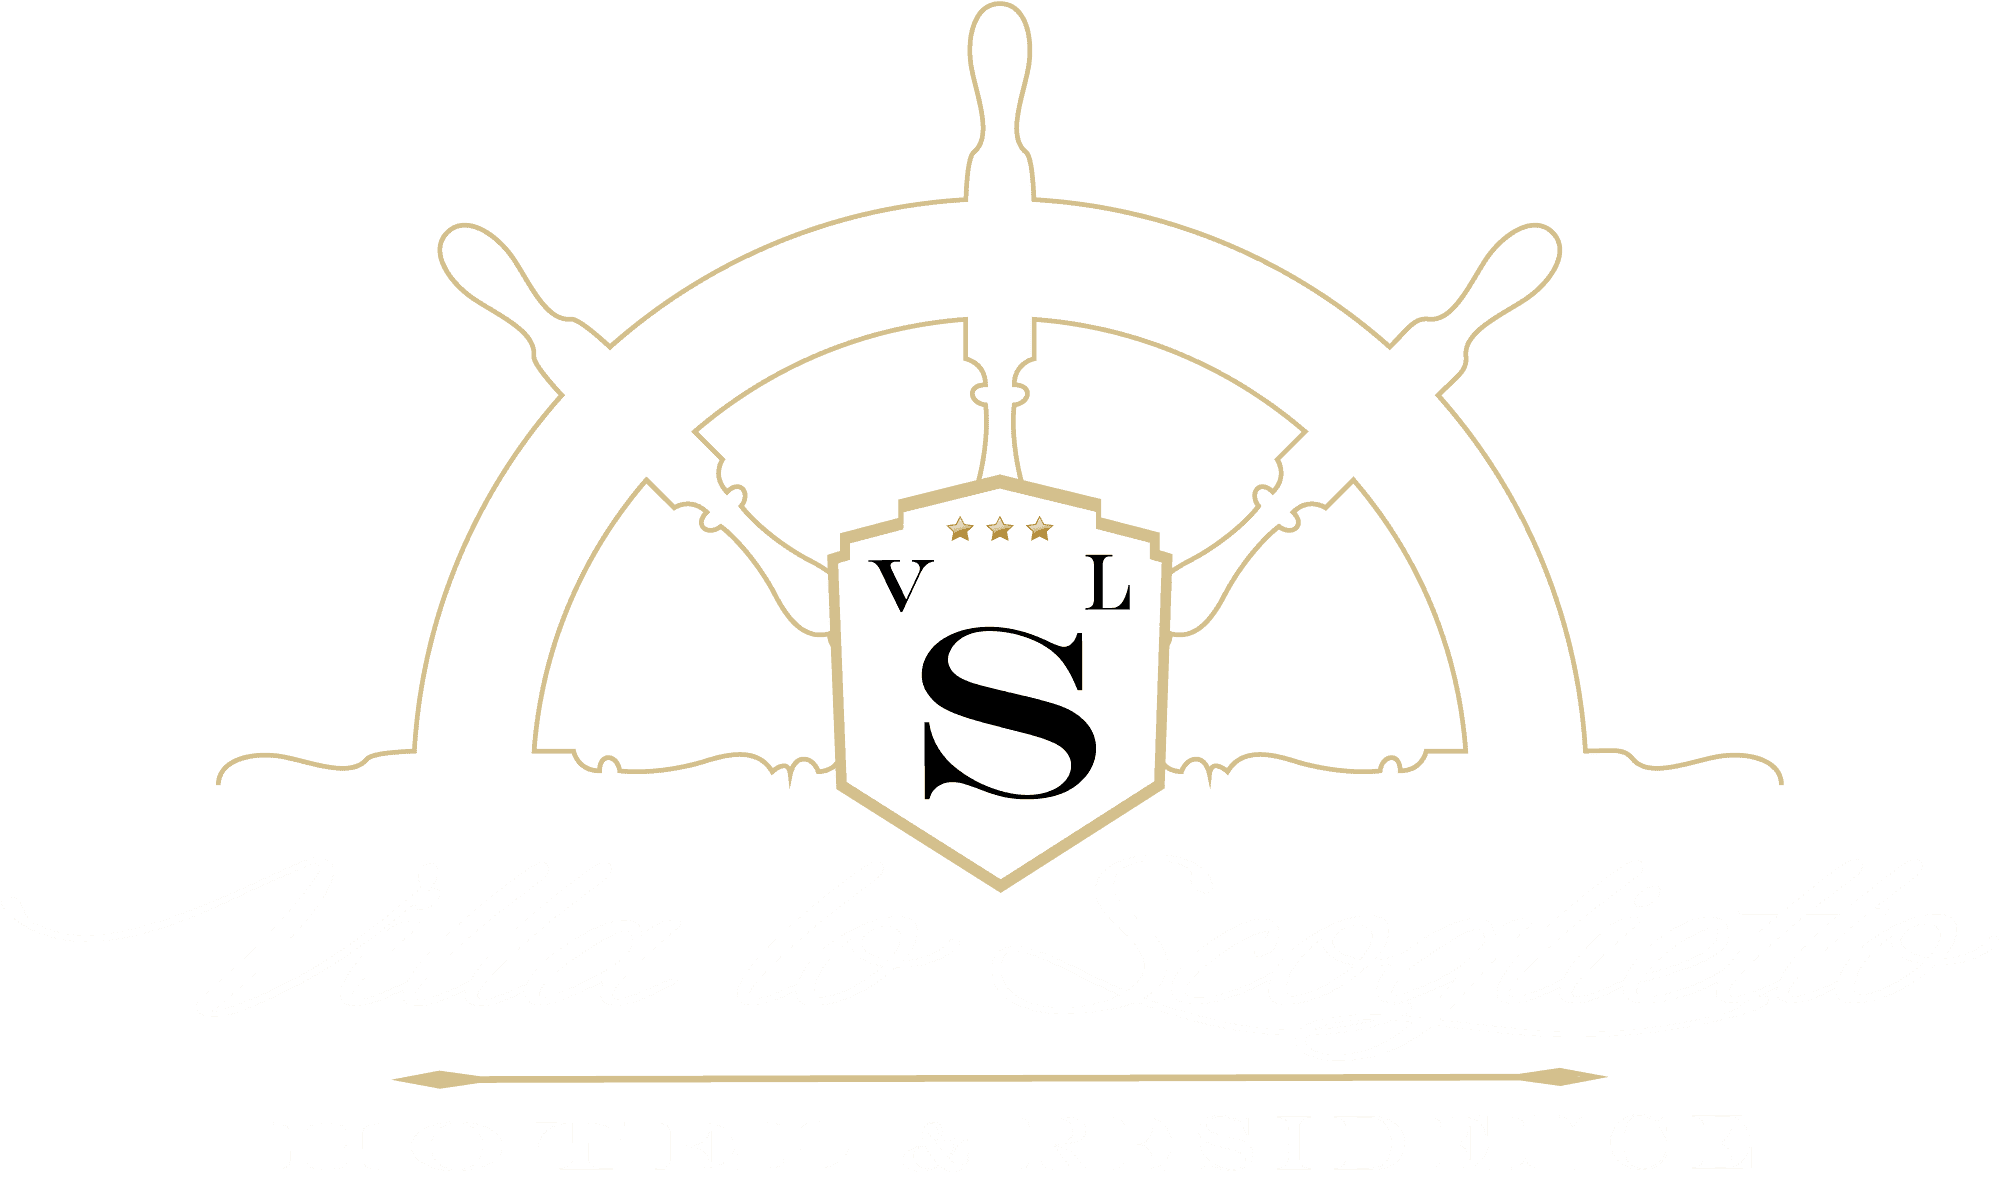 Hotel Villa lo Scoglietto